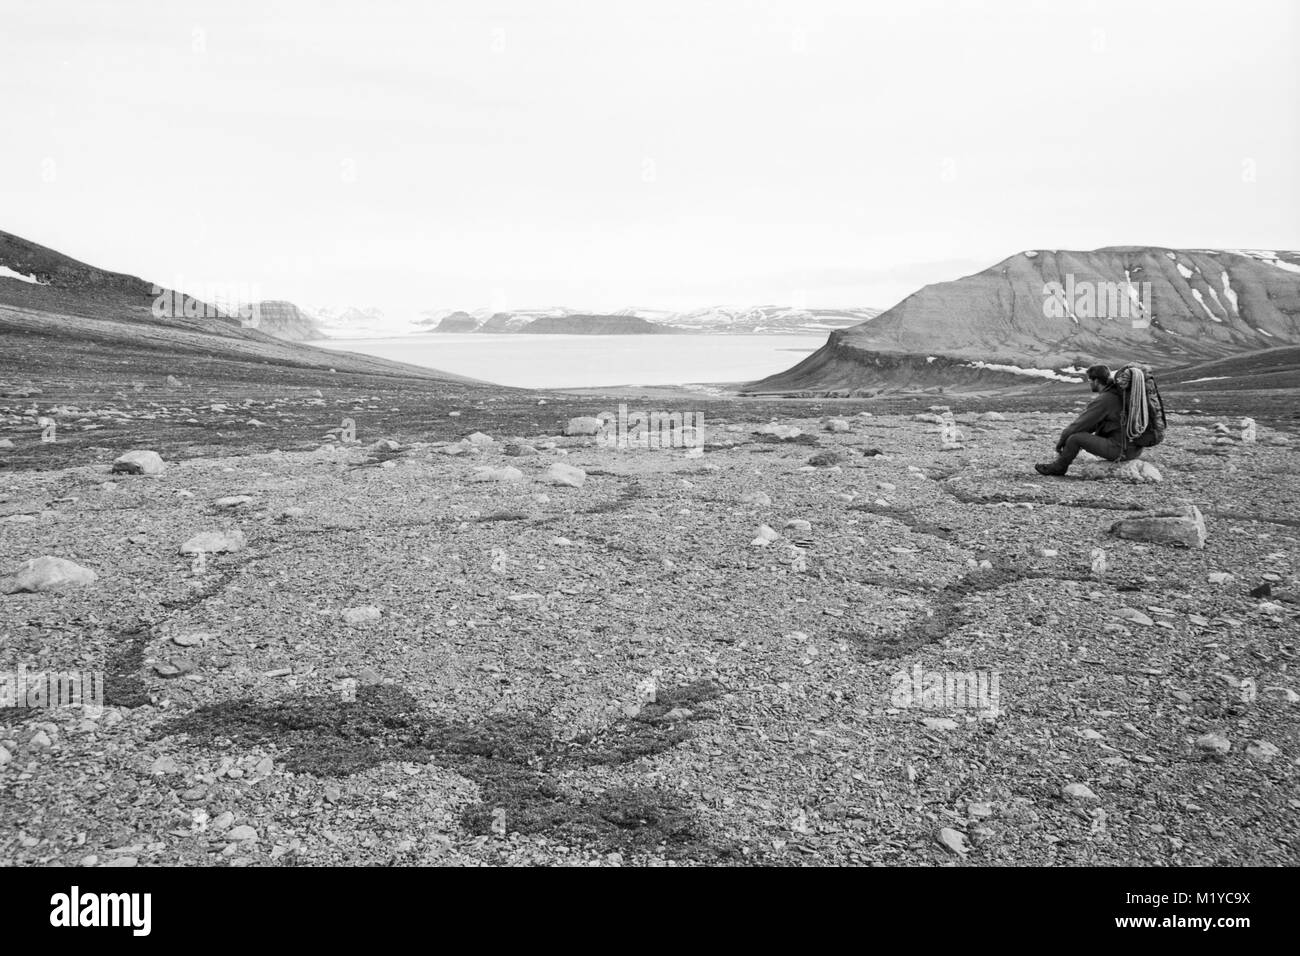 Dans un paysage arctique stérile un homme, vêtu de vêtements de randonnée et de l'exécution cordes d'escalade, est assis sur un petit rocher Banque D'Images